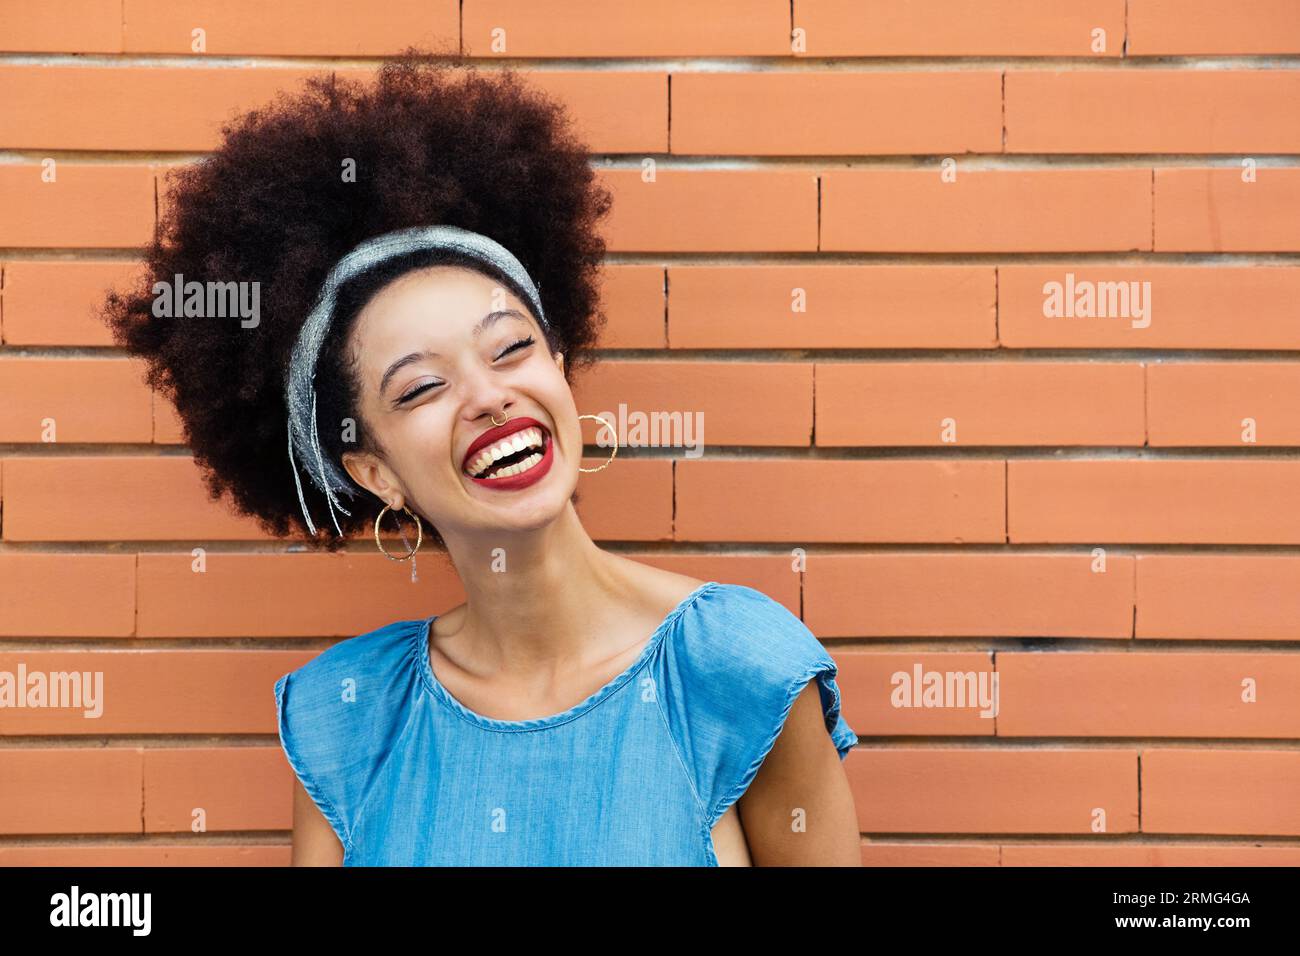 Positive junge afroamerikanische Frau mit Afro-Haar-Stirnband roten Lippen lächelnd und wegschauend, während sie allein gegen braune Ziegelwände steht Stockfoto